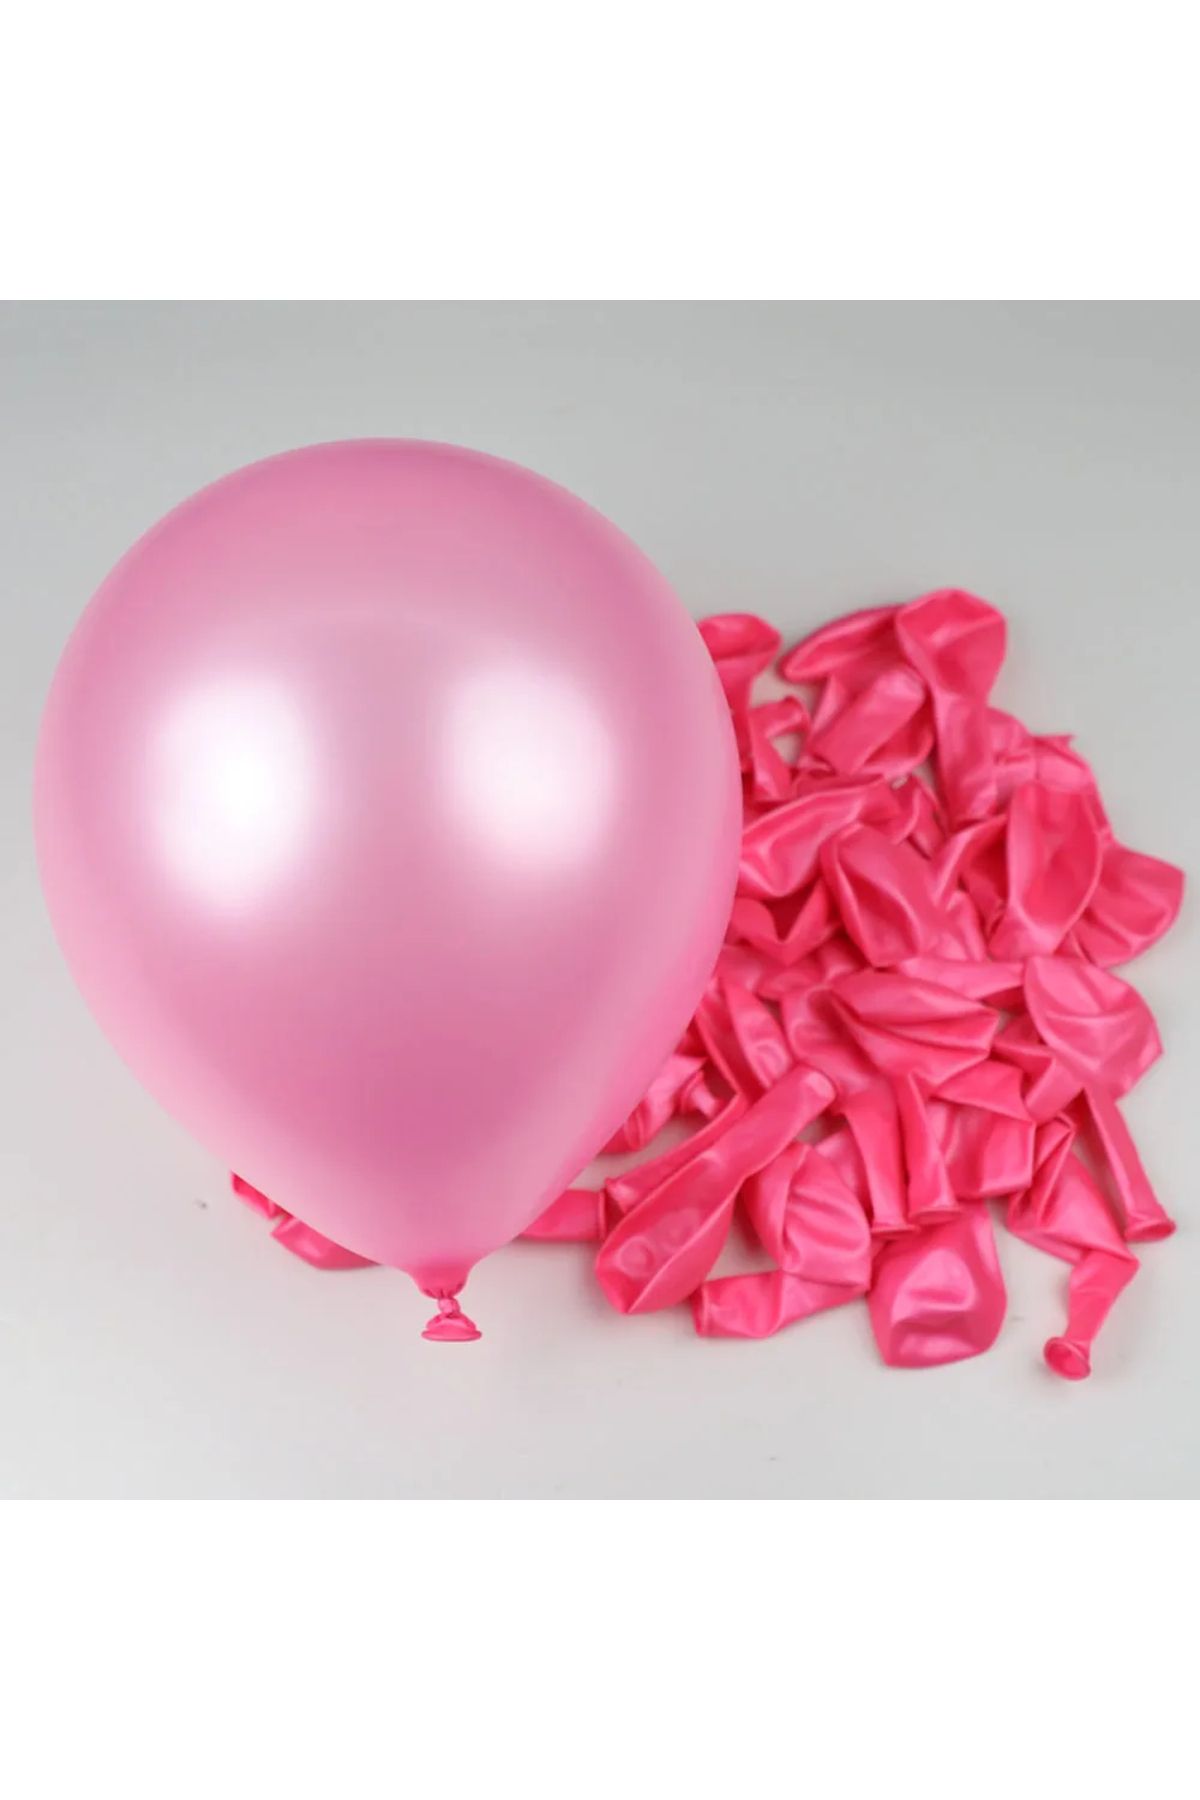 pazariz Metalik Balon Parti Organizasyon Balonu 12 İnç Düğün Doğum Günü Dekorasyon 50 Adet